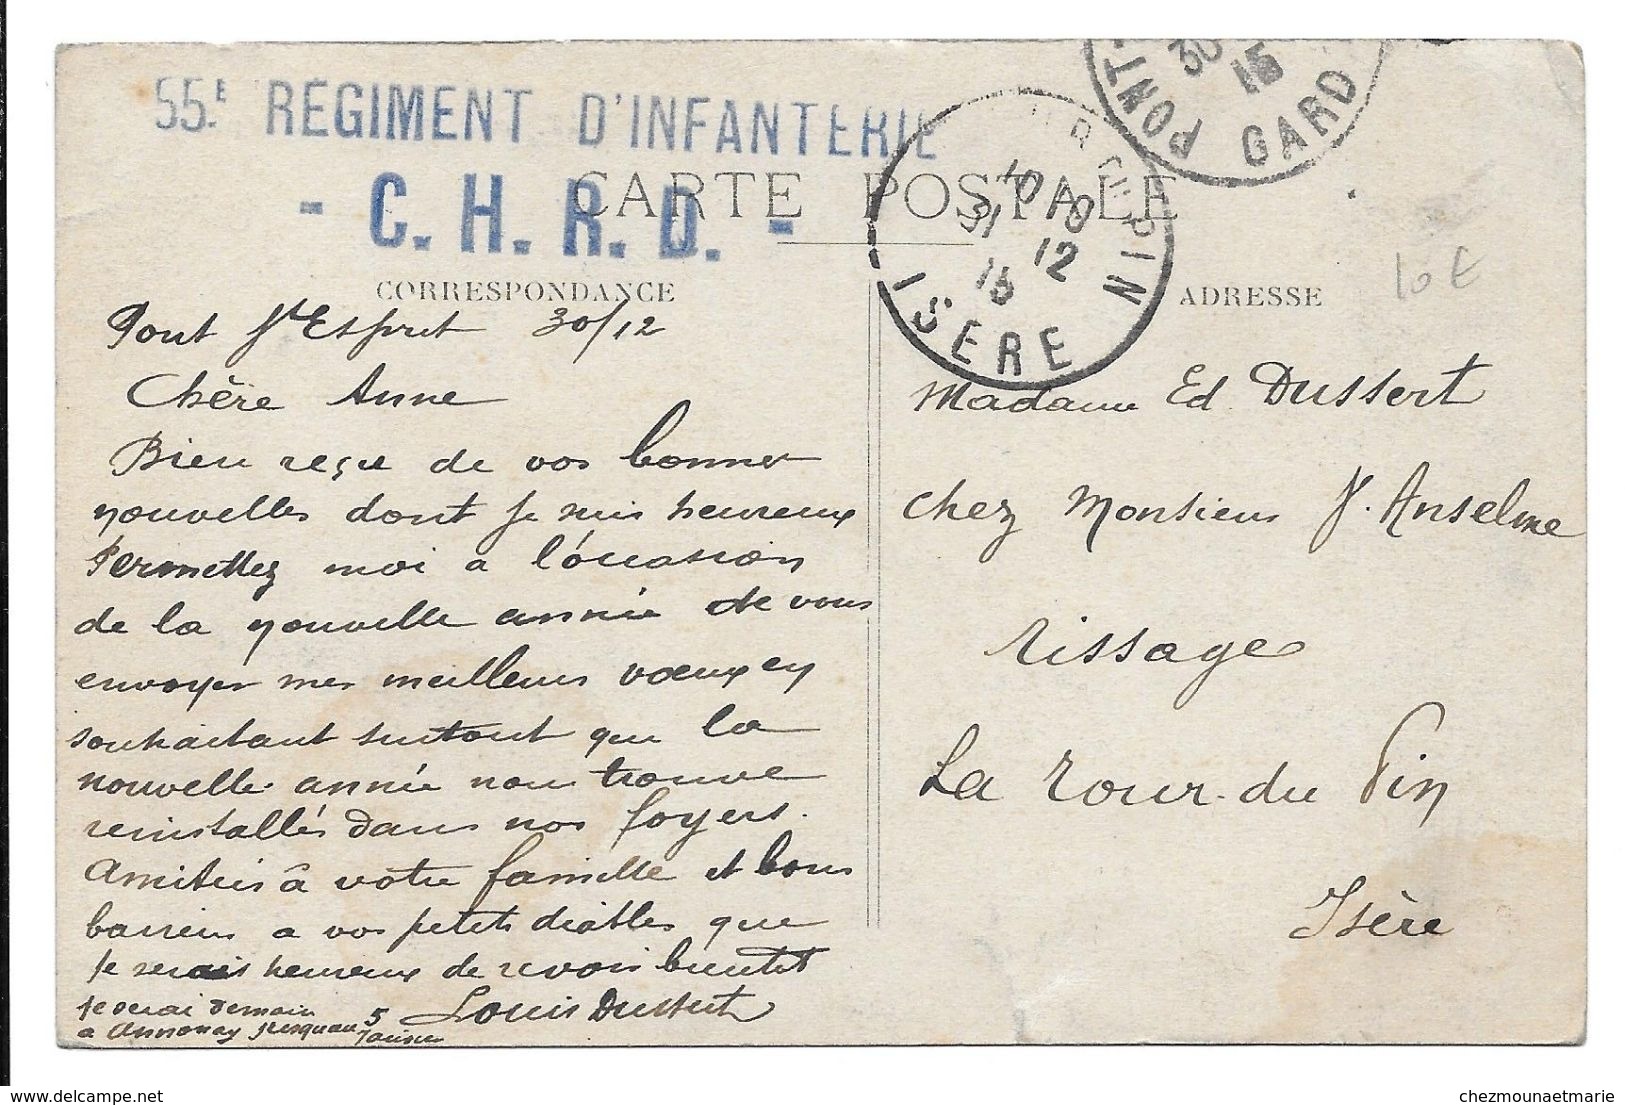 LOUIS DUSSERT PONT ST ESPRIT CASERNE PEPIN DEPOT 1915 55 RI CHRD POUR LA TOUR DU PIN - CPA MILITAIRE - Guerre 1914-18